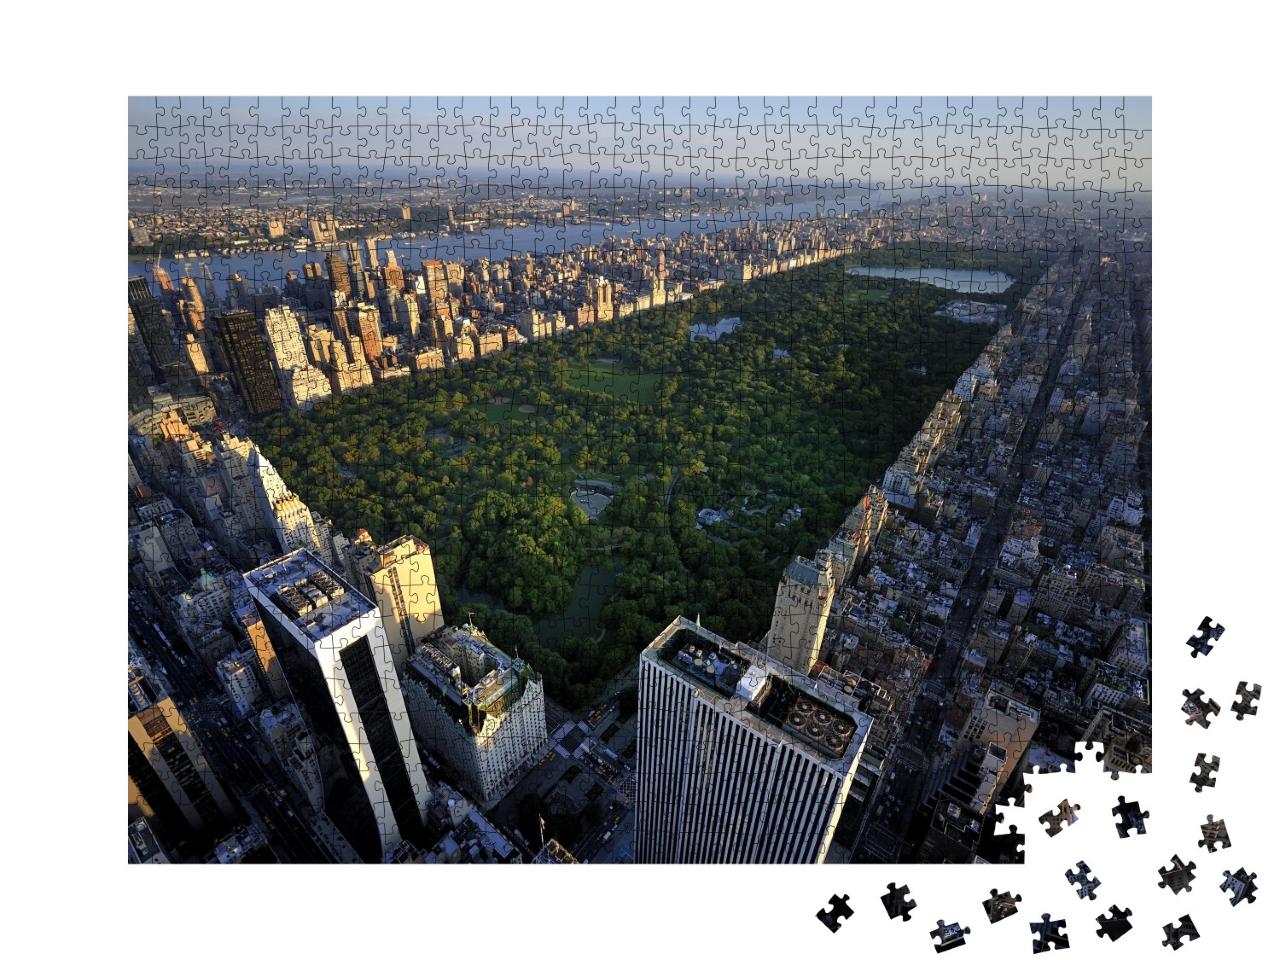 Puzzle de 1000 pièces « Central Park et Manhattan vus d'en haut, New York »